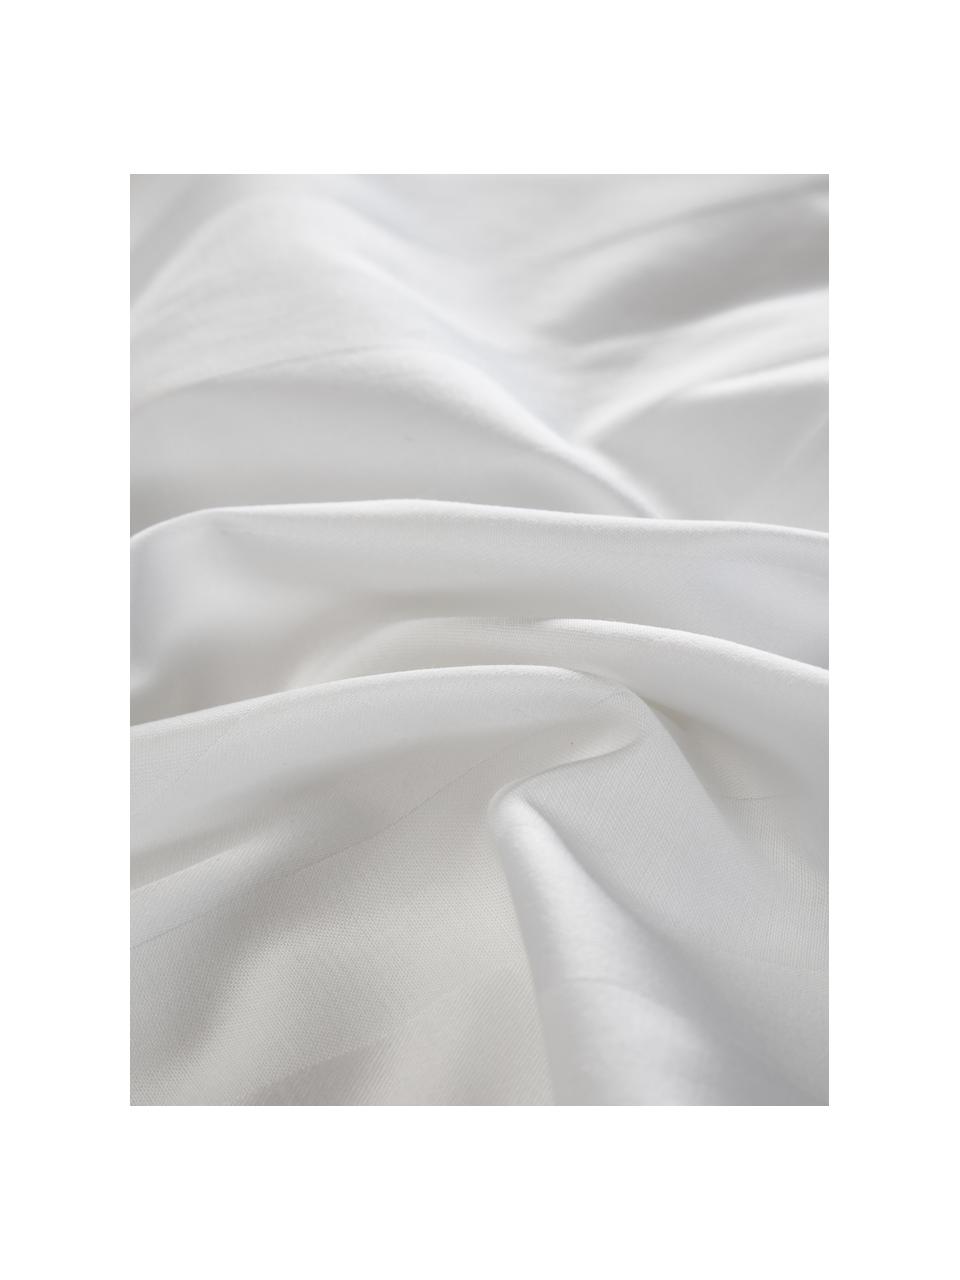 Copripiumino in raso bianco Willa, Tessuto: raso Densità del filo 250, Bianco, Larg. 240 x Lung. 220 cm